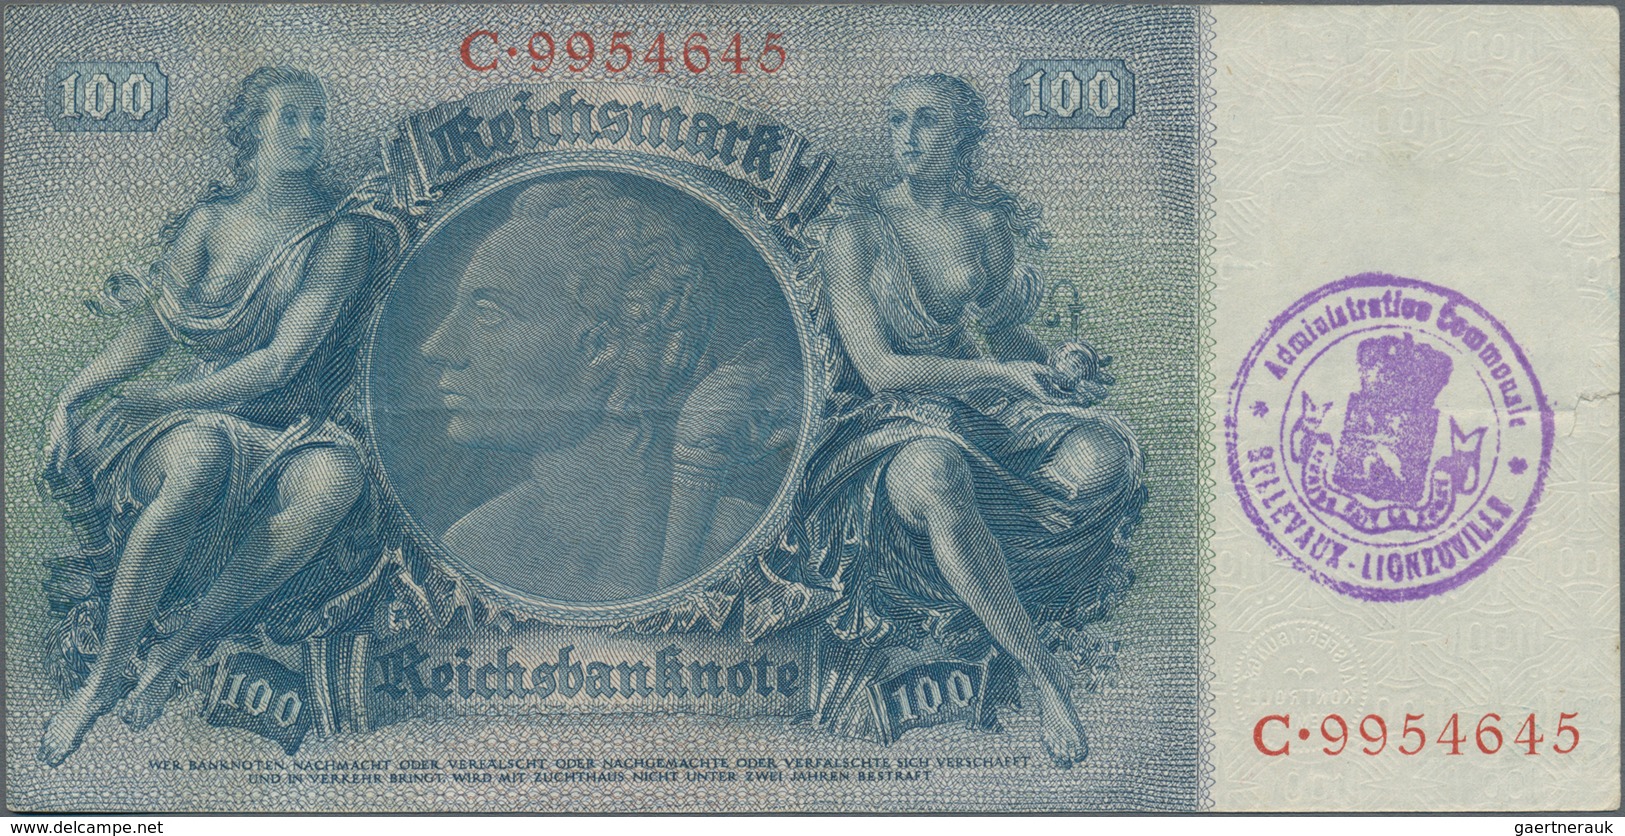 Deutschland - Deutsches Reich bis 1945: Lot mit 7 belgischen Abstempelungen auf 100 Reichsmark, dabe